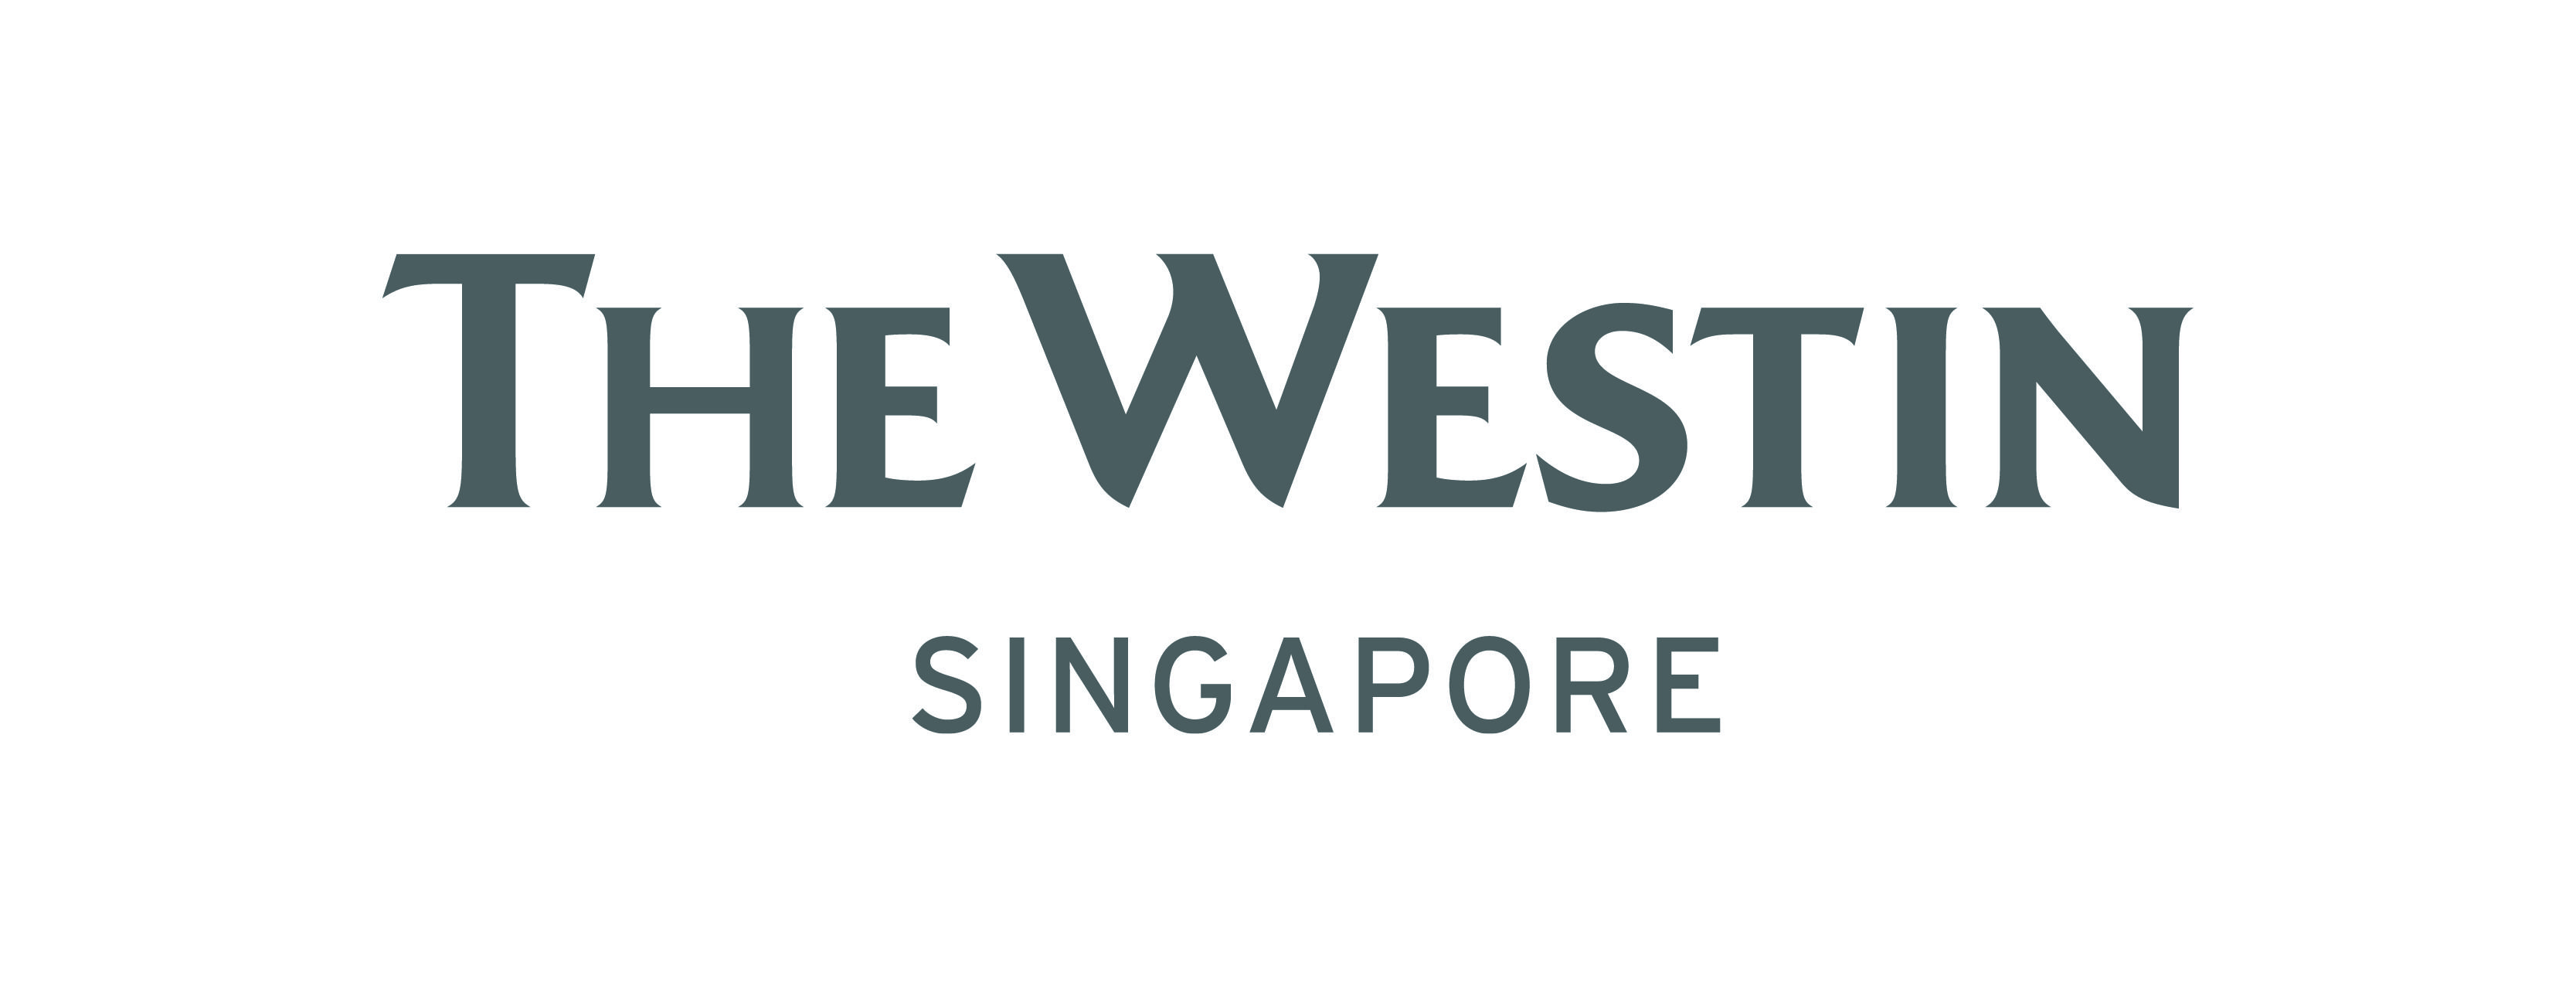 Westin Logo - The Westin Singapore logo - CMYK(High Res) | Singapore Marathon